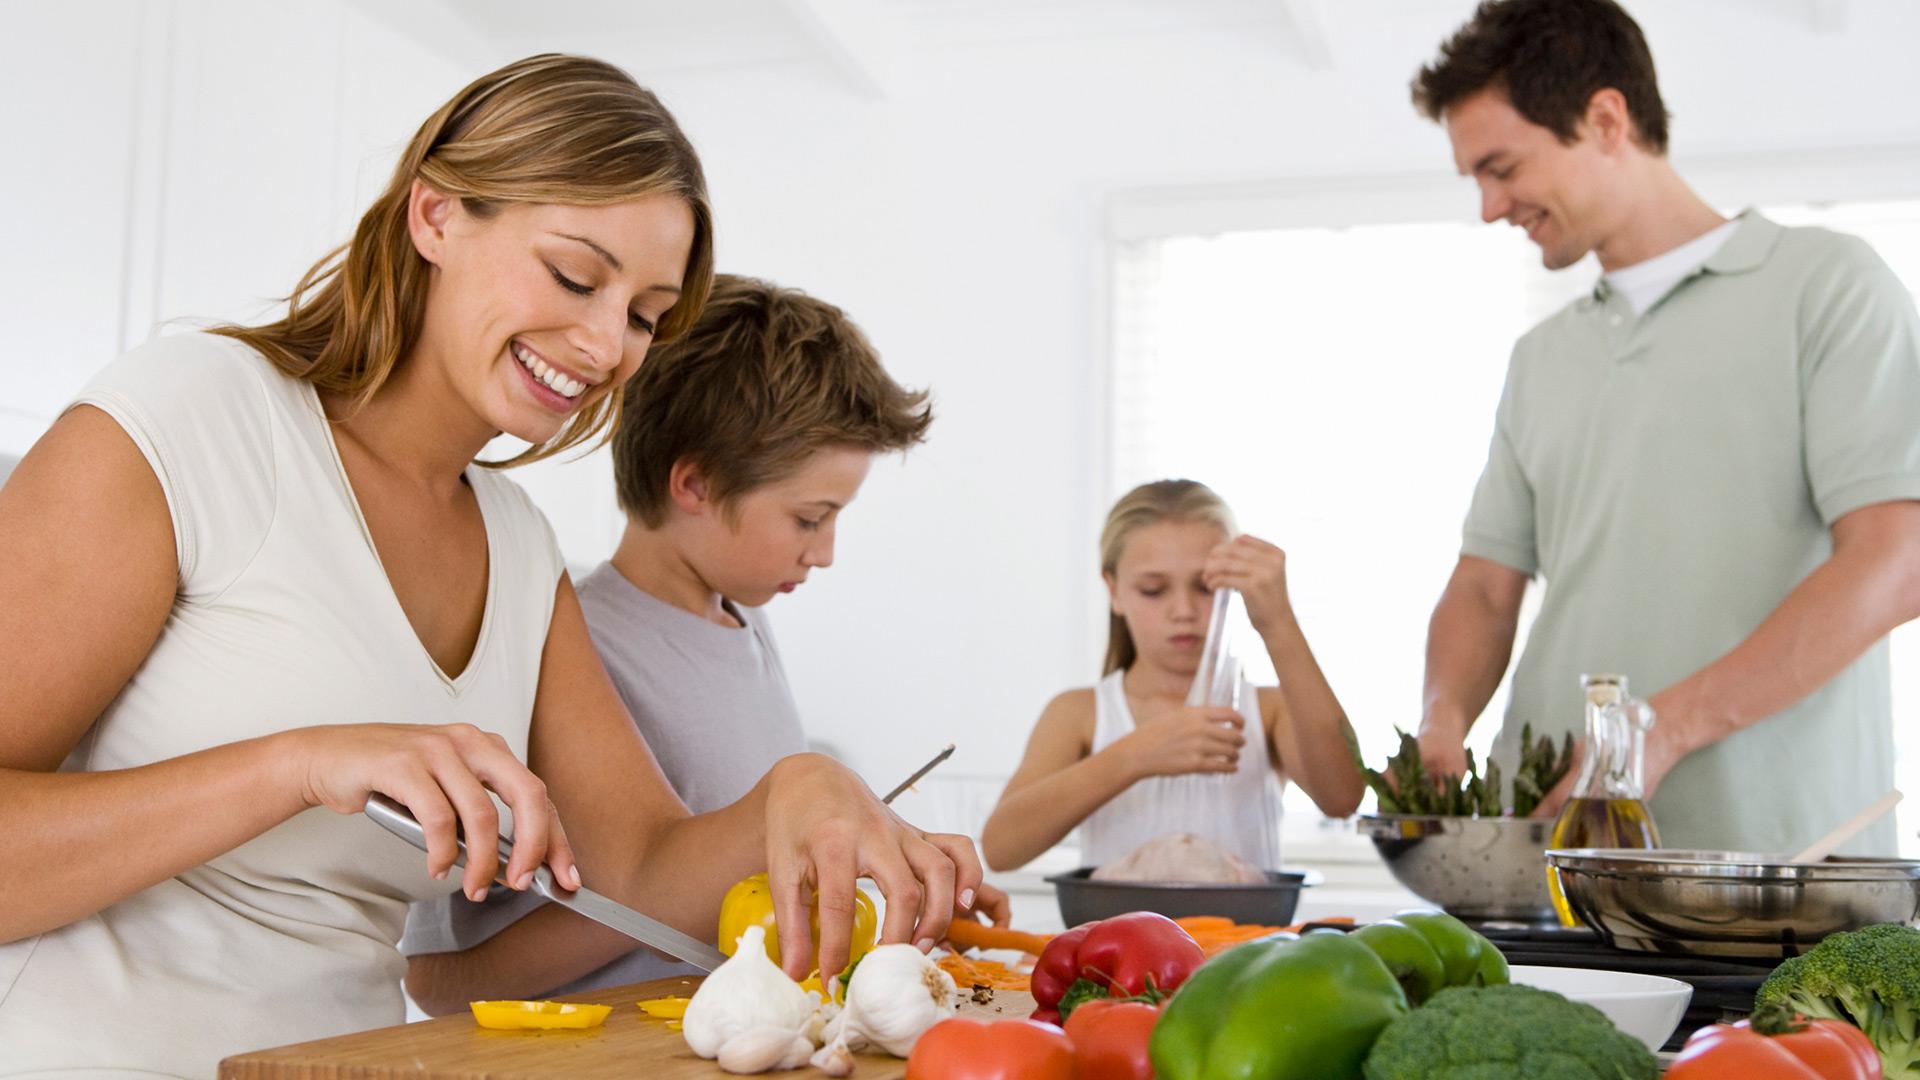 Relações familiares saudáveis beneficiam a saúde em geral.